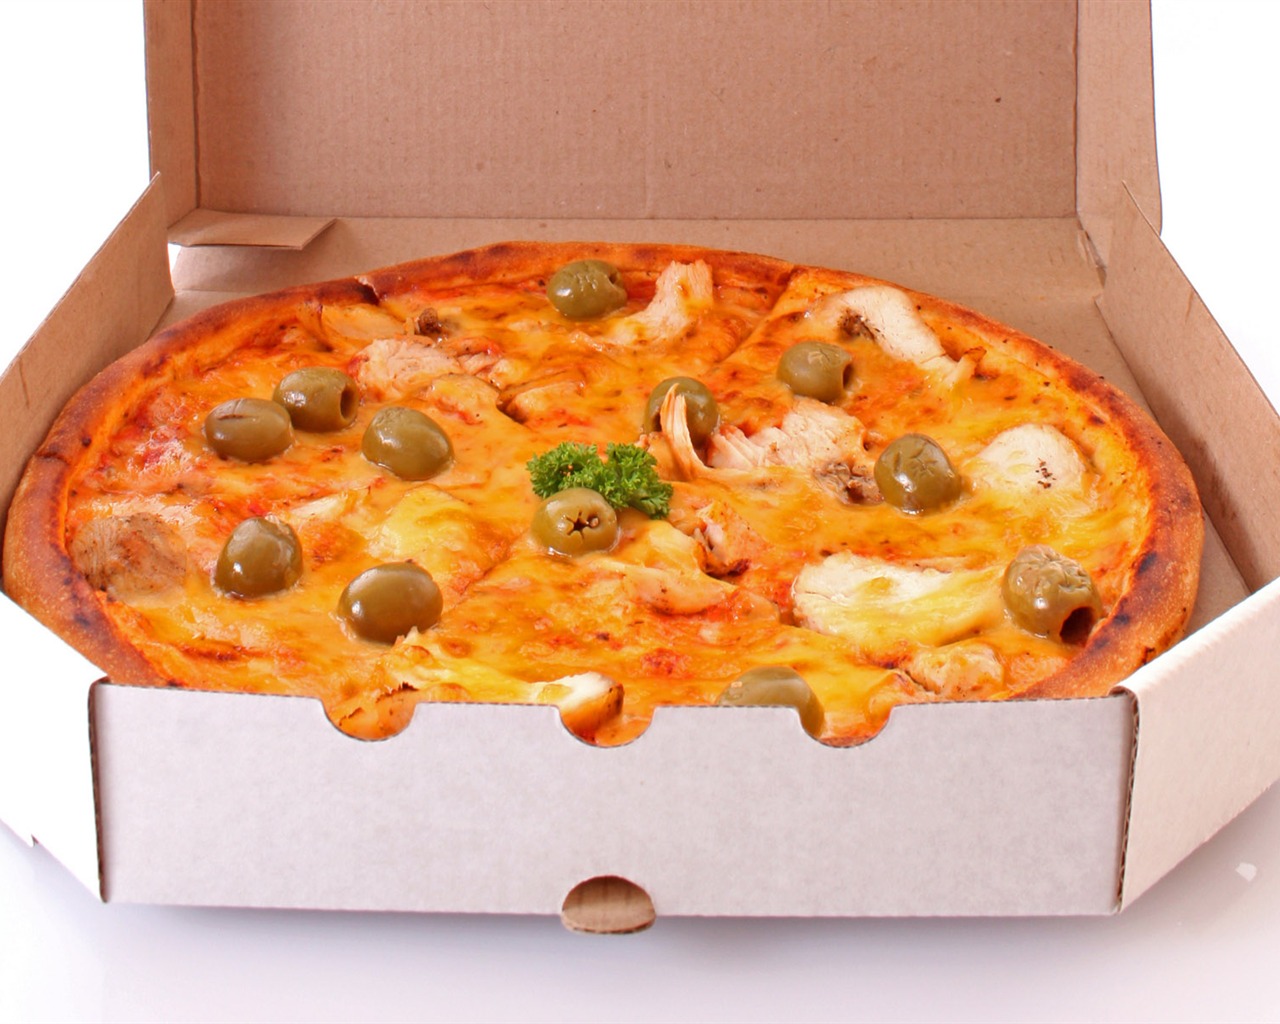 Fondos de pizzerías de Alimentos (3) #13 - 1280x1024